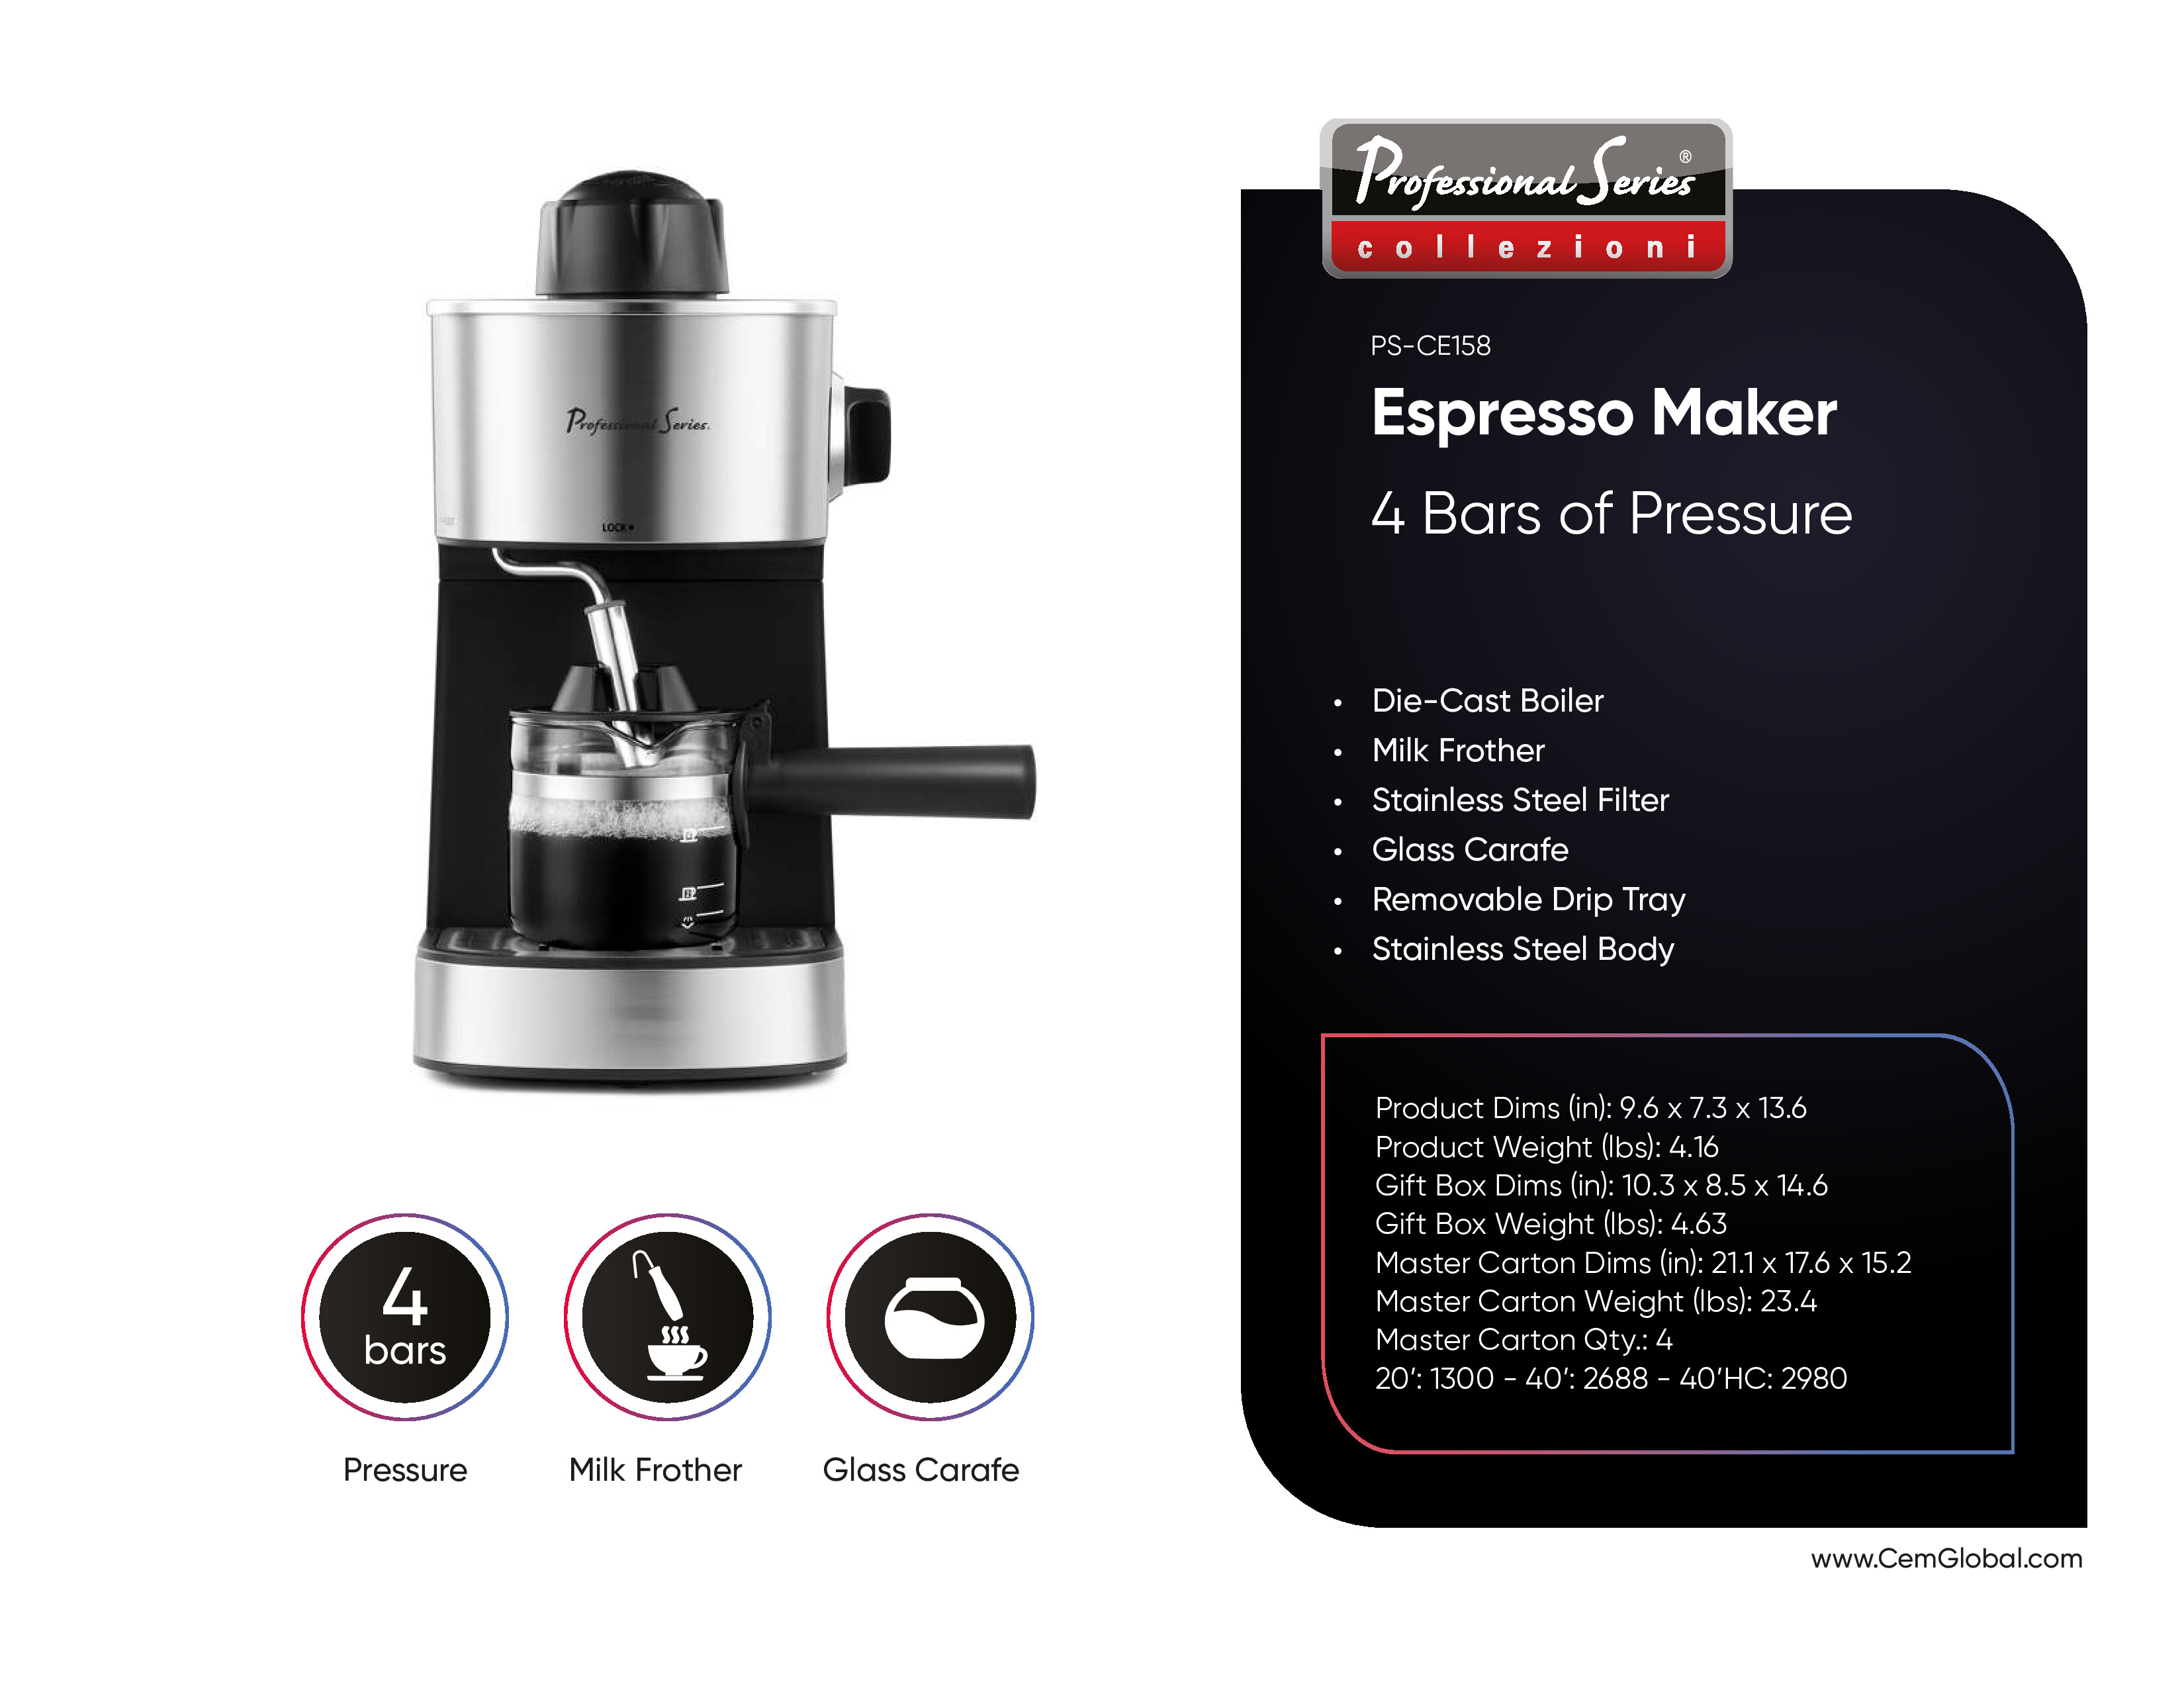 Espresso Maker 4 bars of pressure